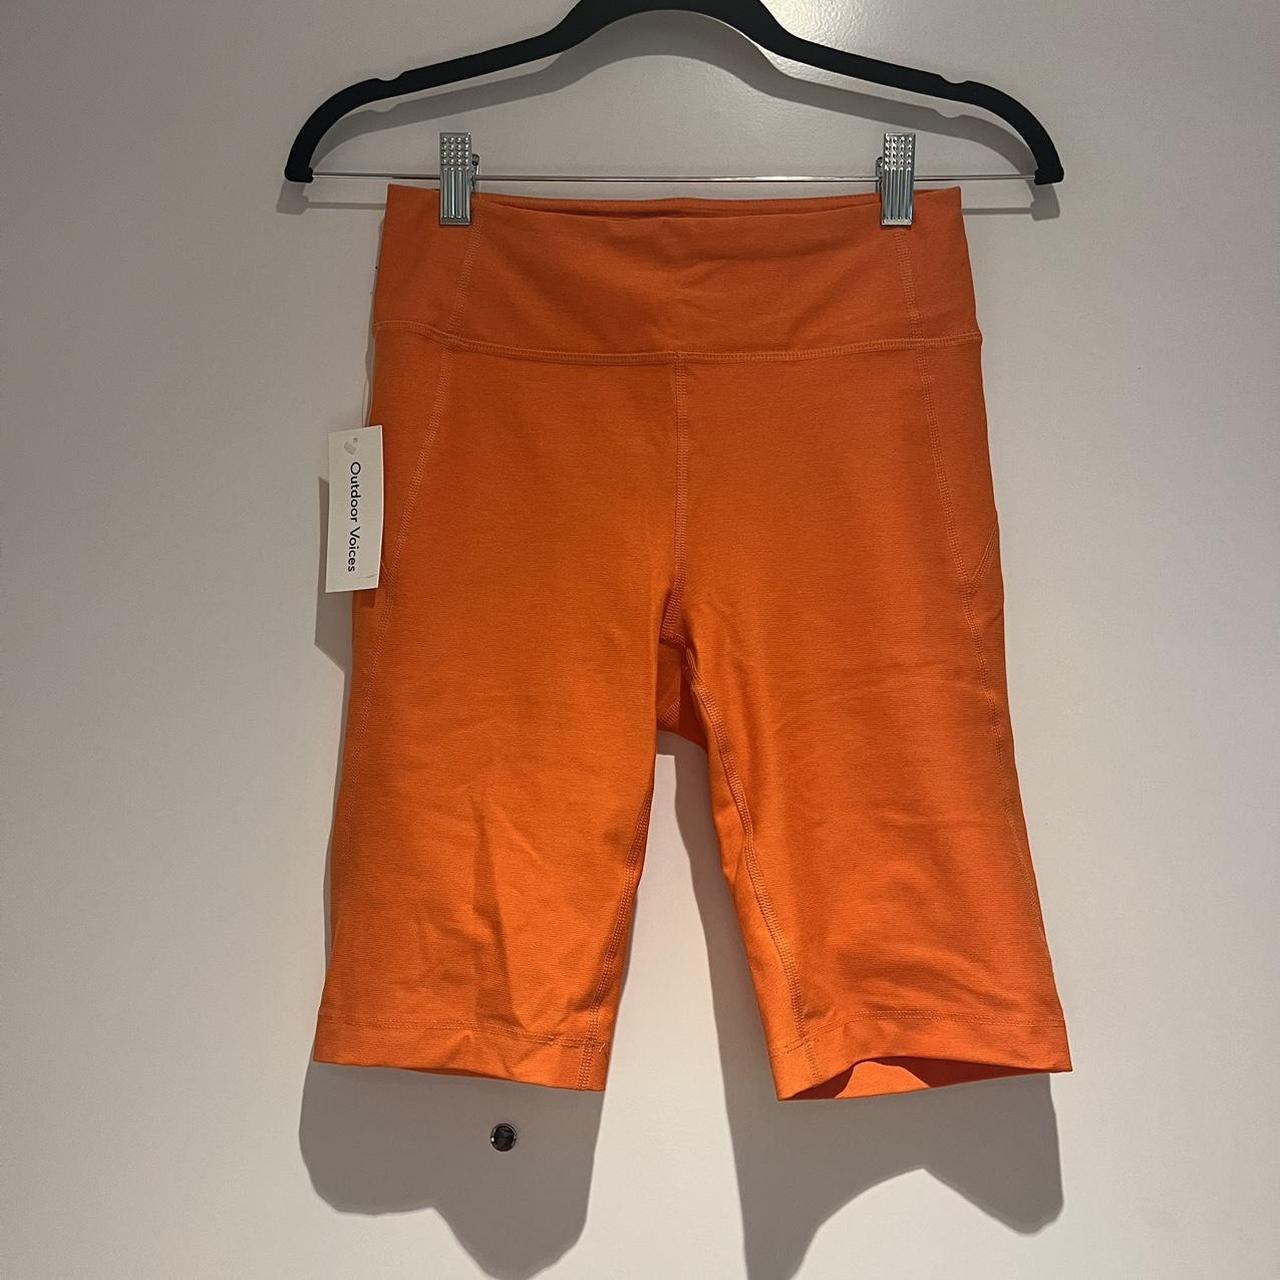 Outdoor voices orange bike shorts - Depop